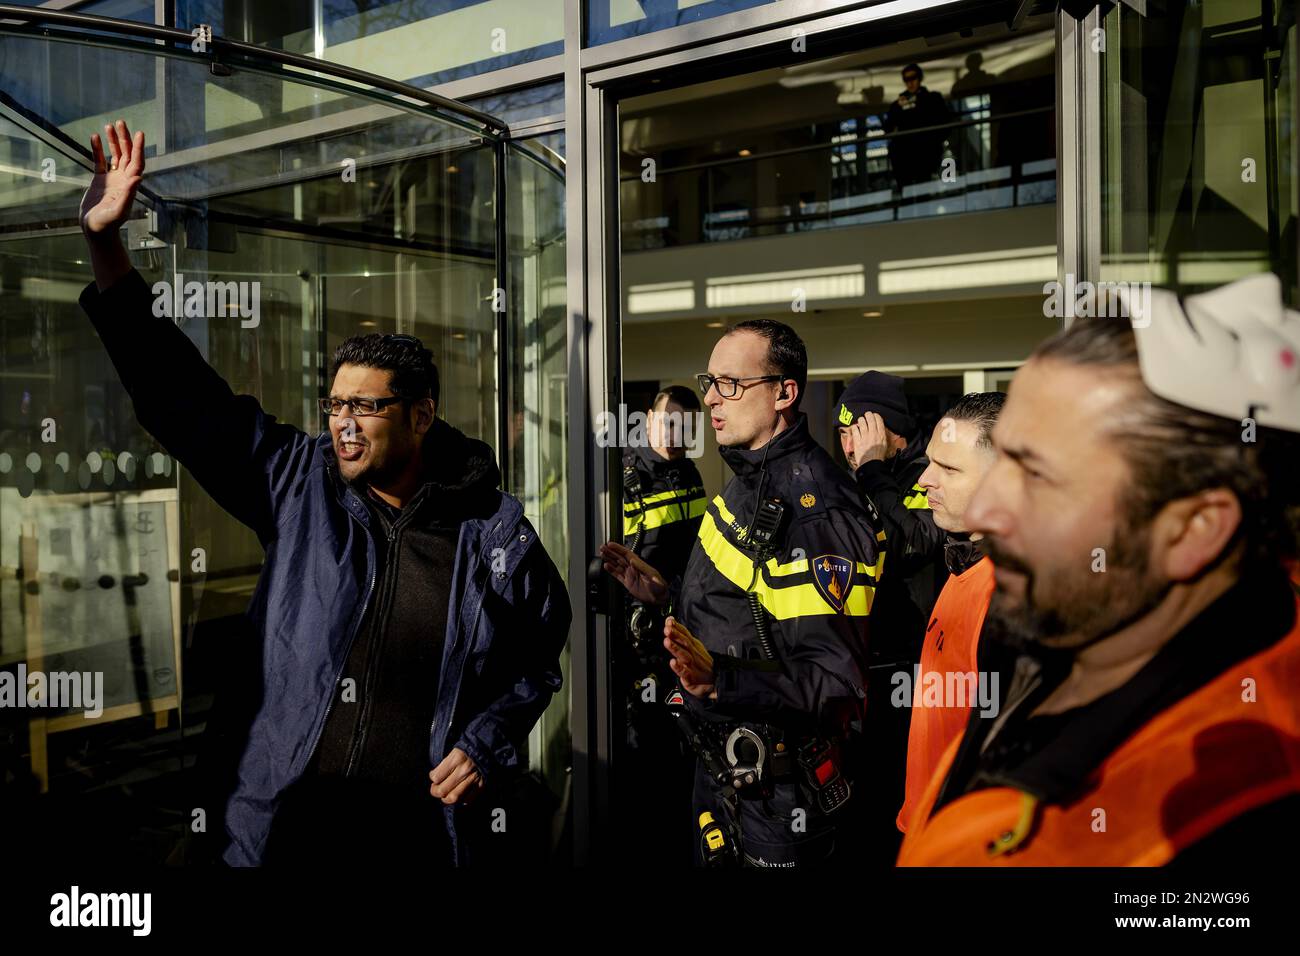 AMSTERDAM - alcuni piloti Uber cercano di entrare nella sede di Uber durante una protesta. In vari paesi, i conducenti stanno combattendo contro ciò che considerano un trattamento ingiusto da parte della compagnia di taxi. ANP ROBIN VAN LONKHUIJSEN olanda fuori - belgio fuori Foto Stock